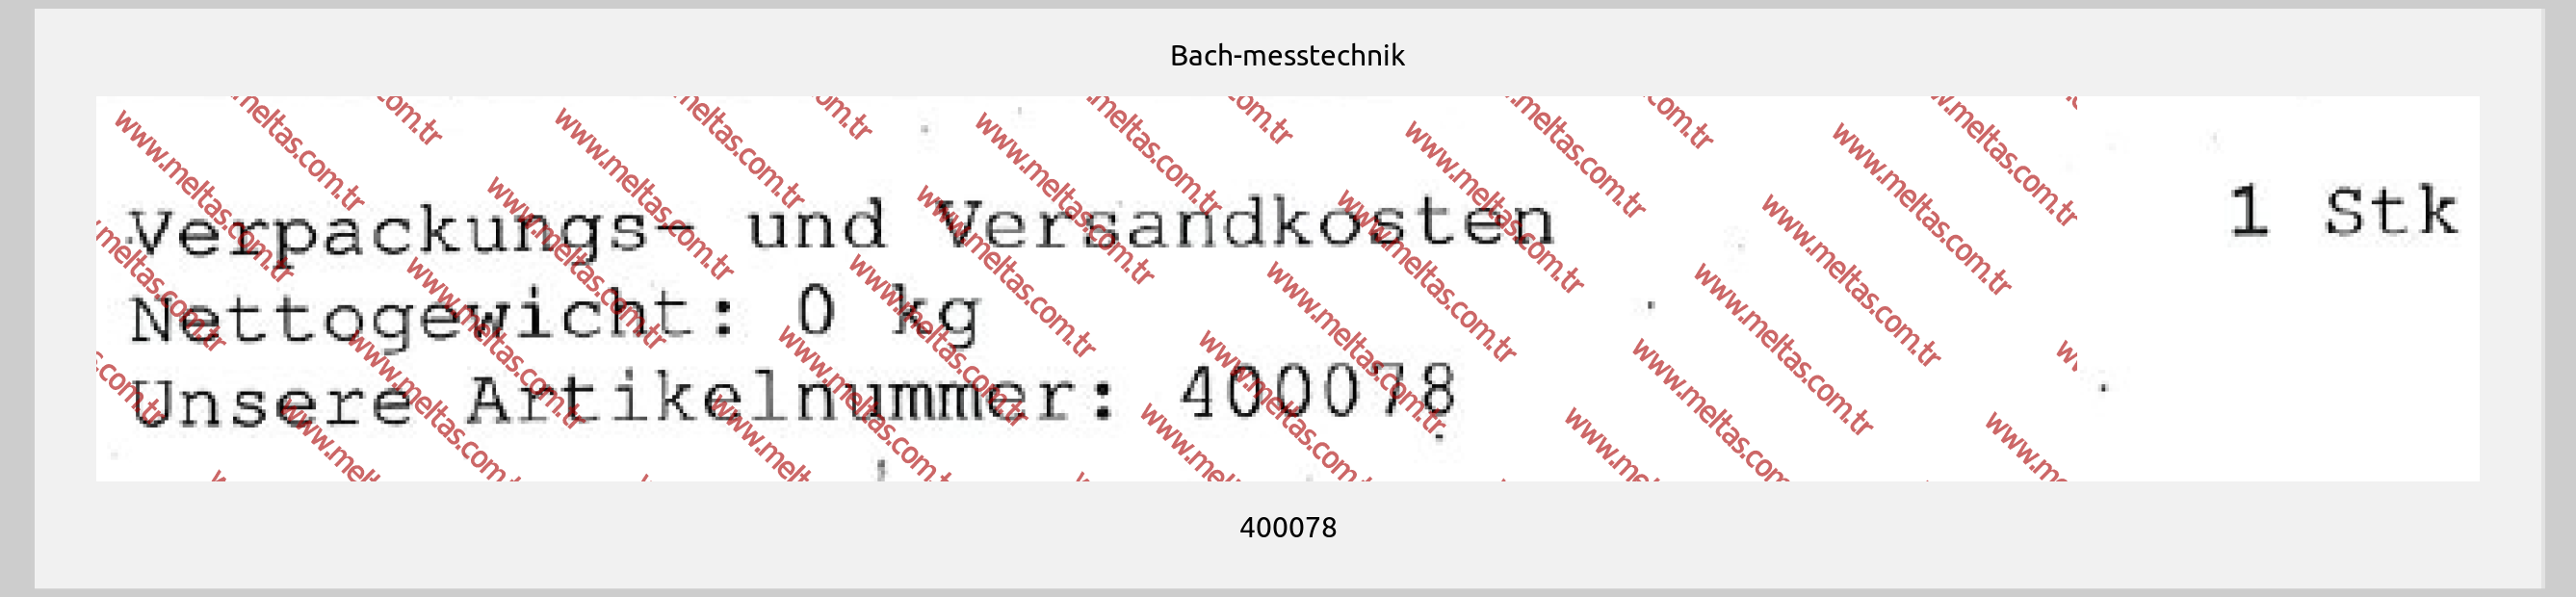 Bach-messtechnik-400078